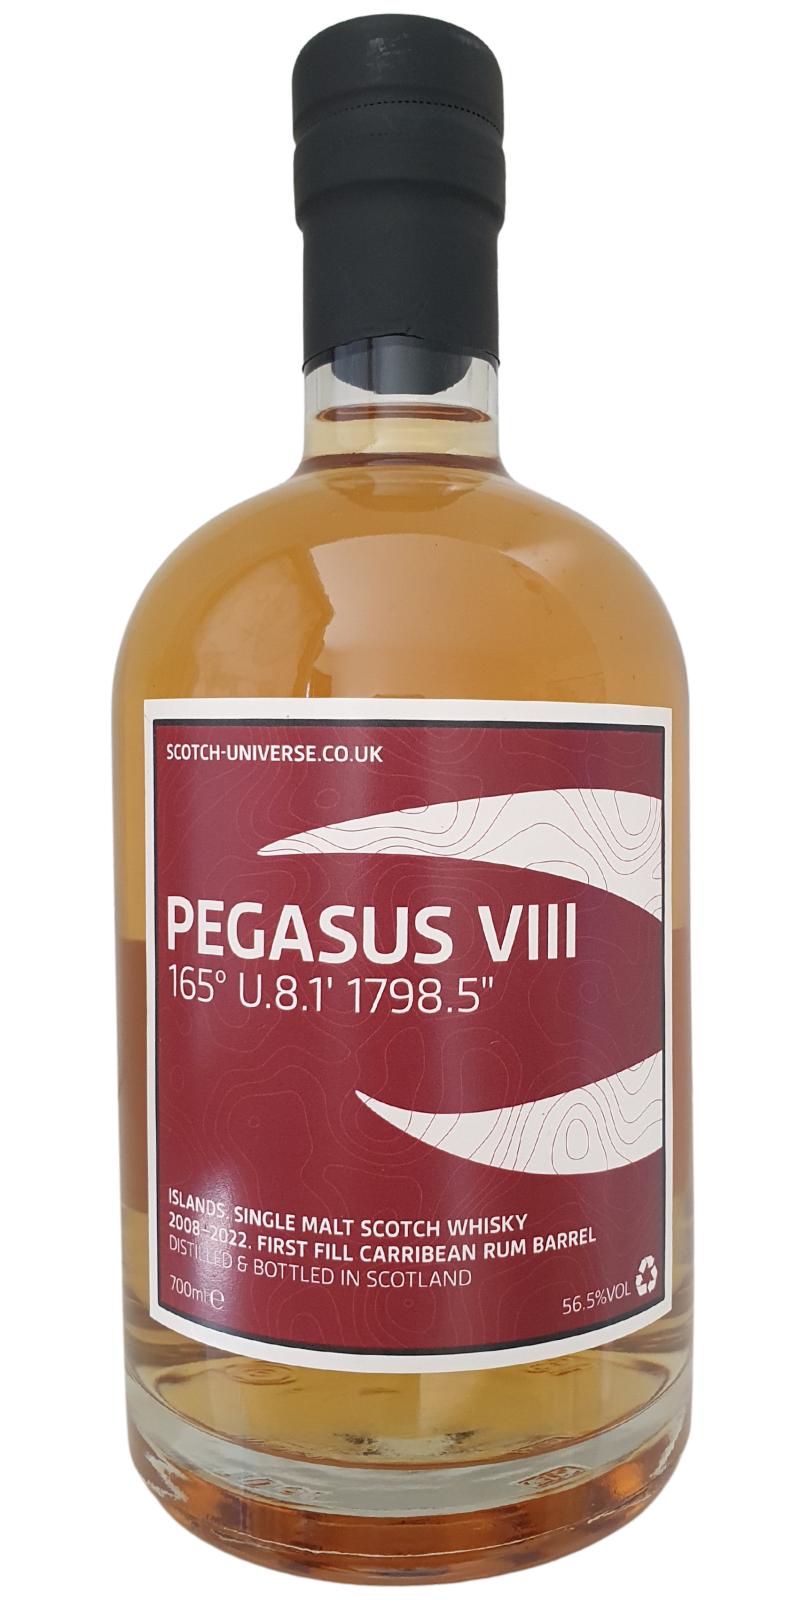 Scotch Universe Pegasus VIII - 165° U.8.1' 1798.5"